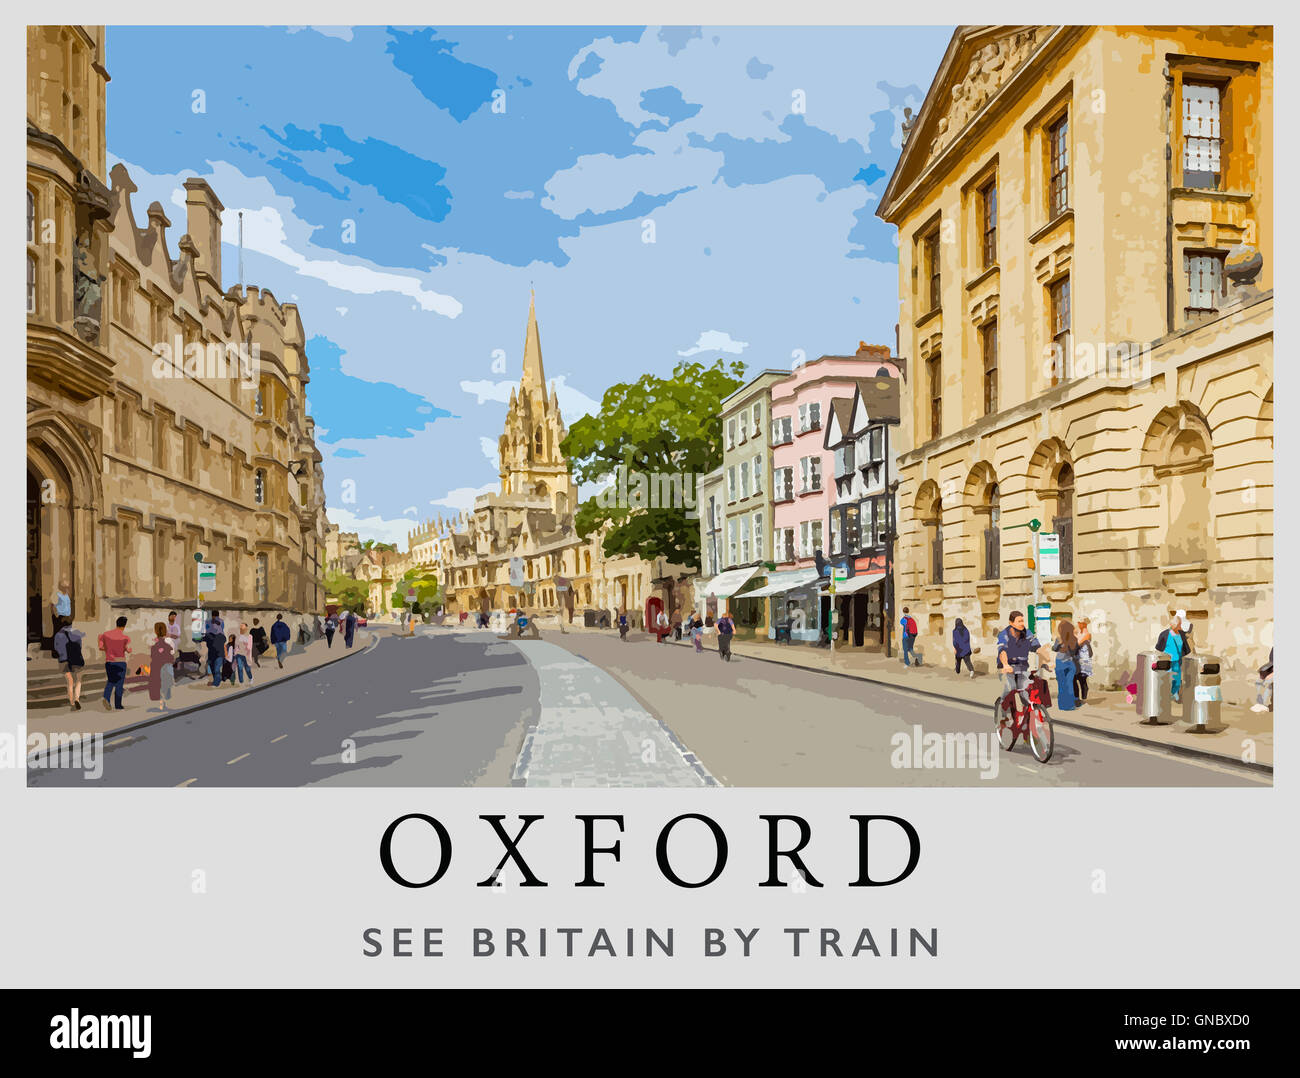 Une interprétation moderne d'une affiche de 1958 pour les chemins de fer britanniques par l'artiste Alan Carr Linford d'Oxford High Street Oxford, Angleterre Banque D'Images